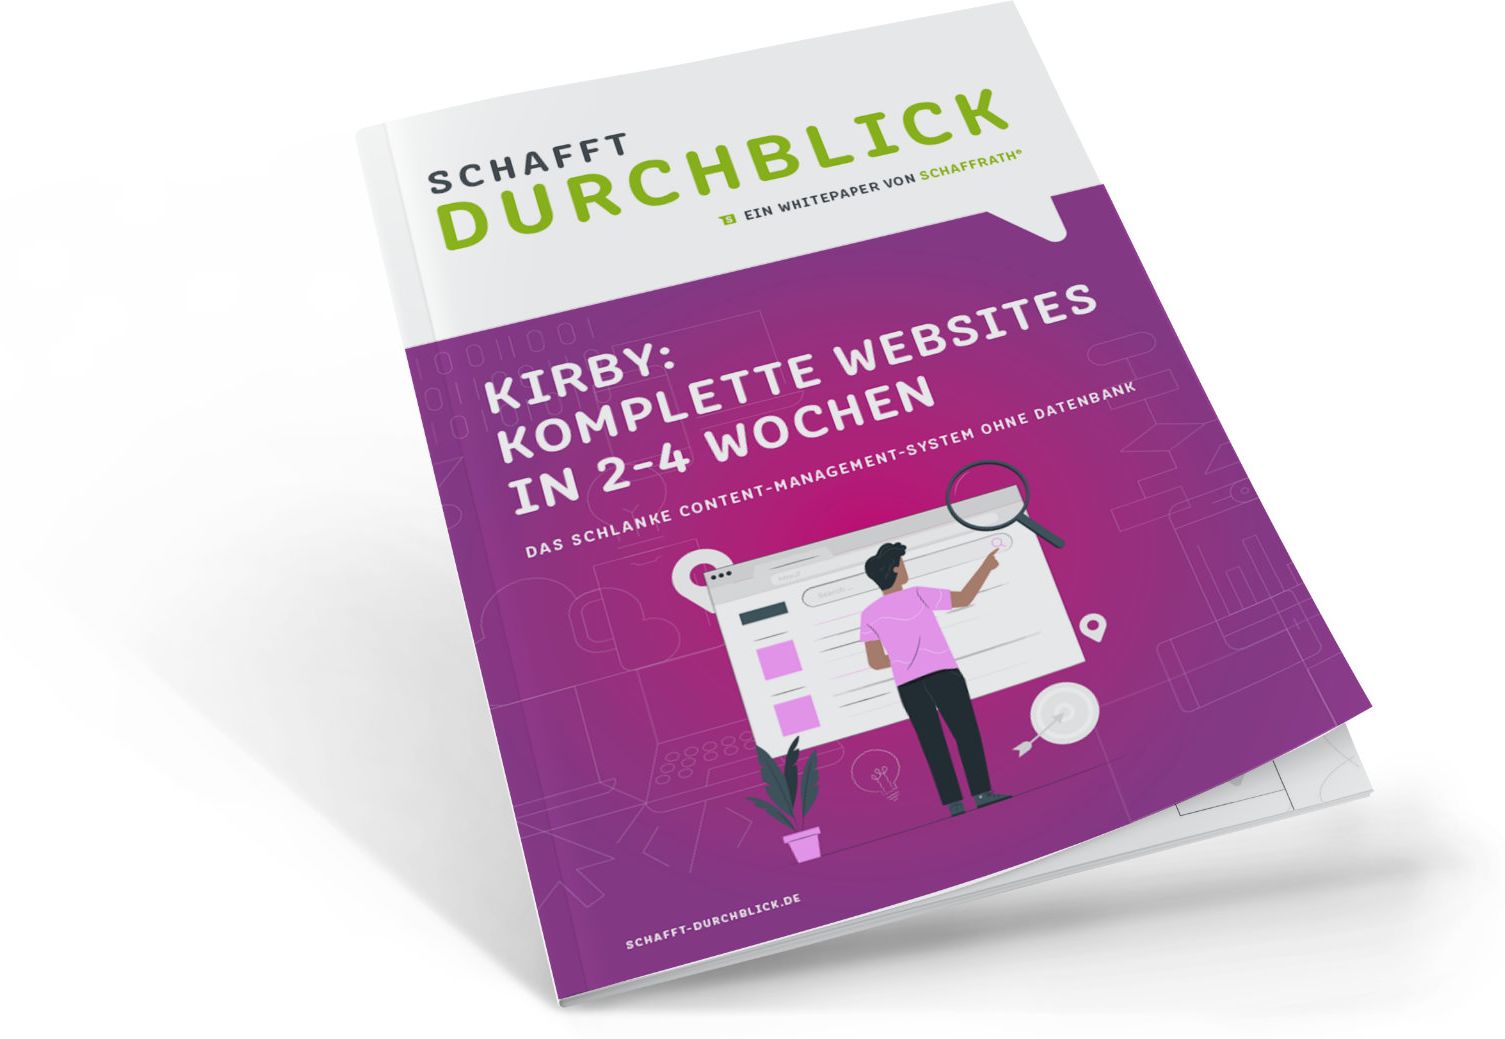 Kirby-Whitepaper: Komplette Websites in 2-4 Wochen. Das schlanke Content-Management-System ohne Datenbank.